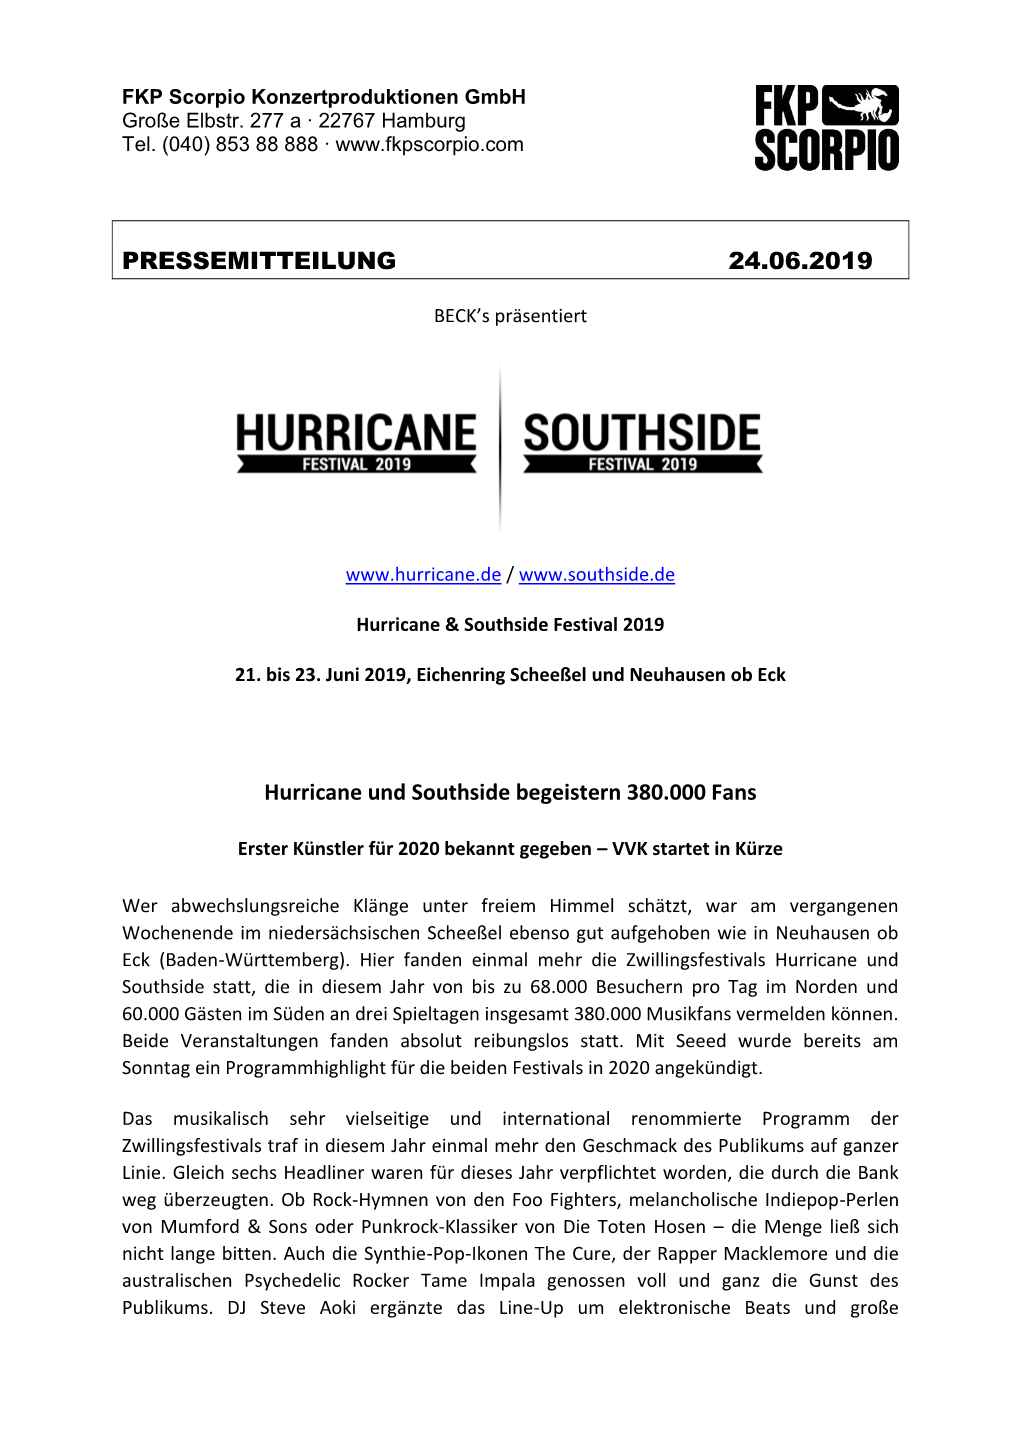 PRESSEMITTEILUNG 24.06.2019 Hurricane Und Southside